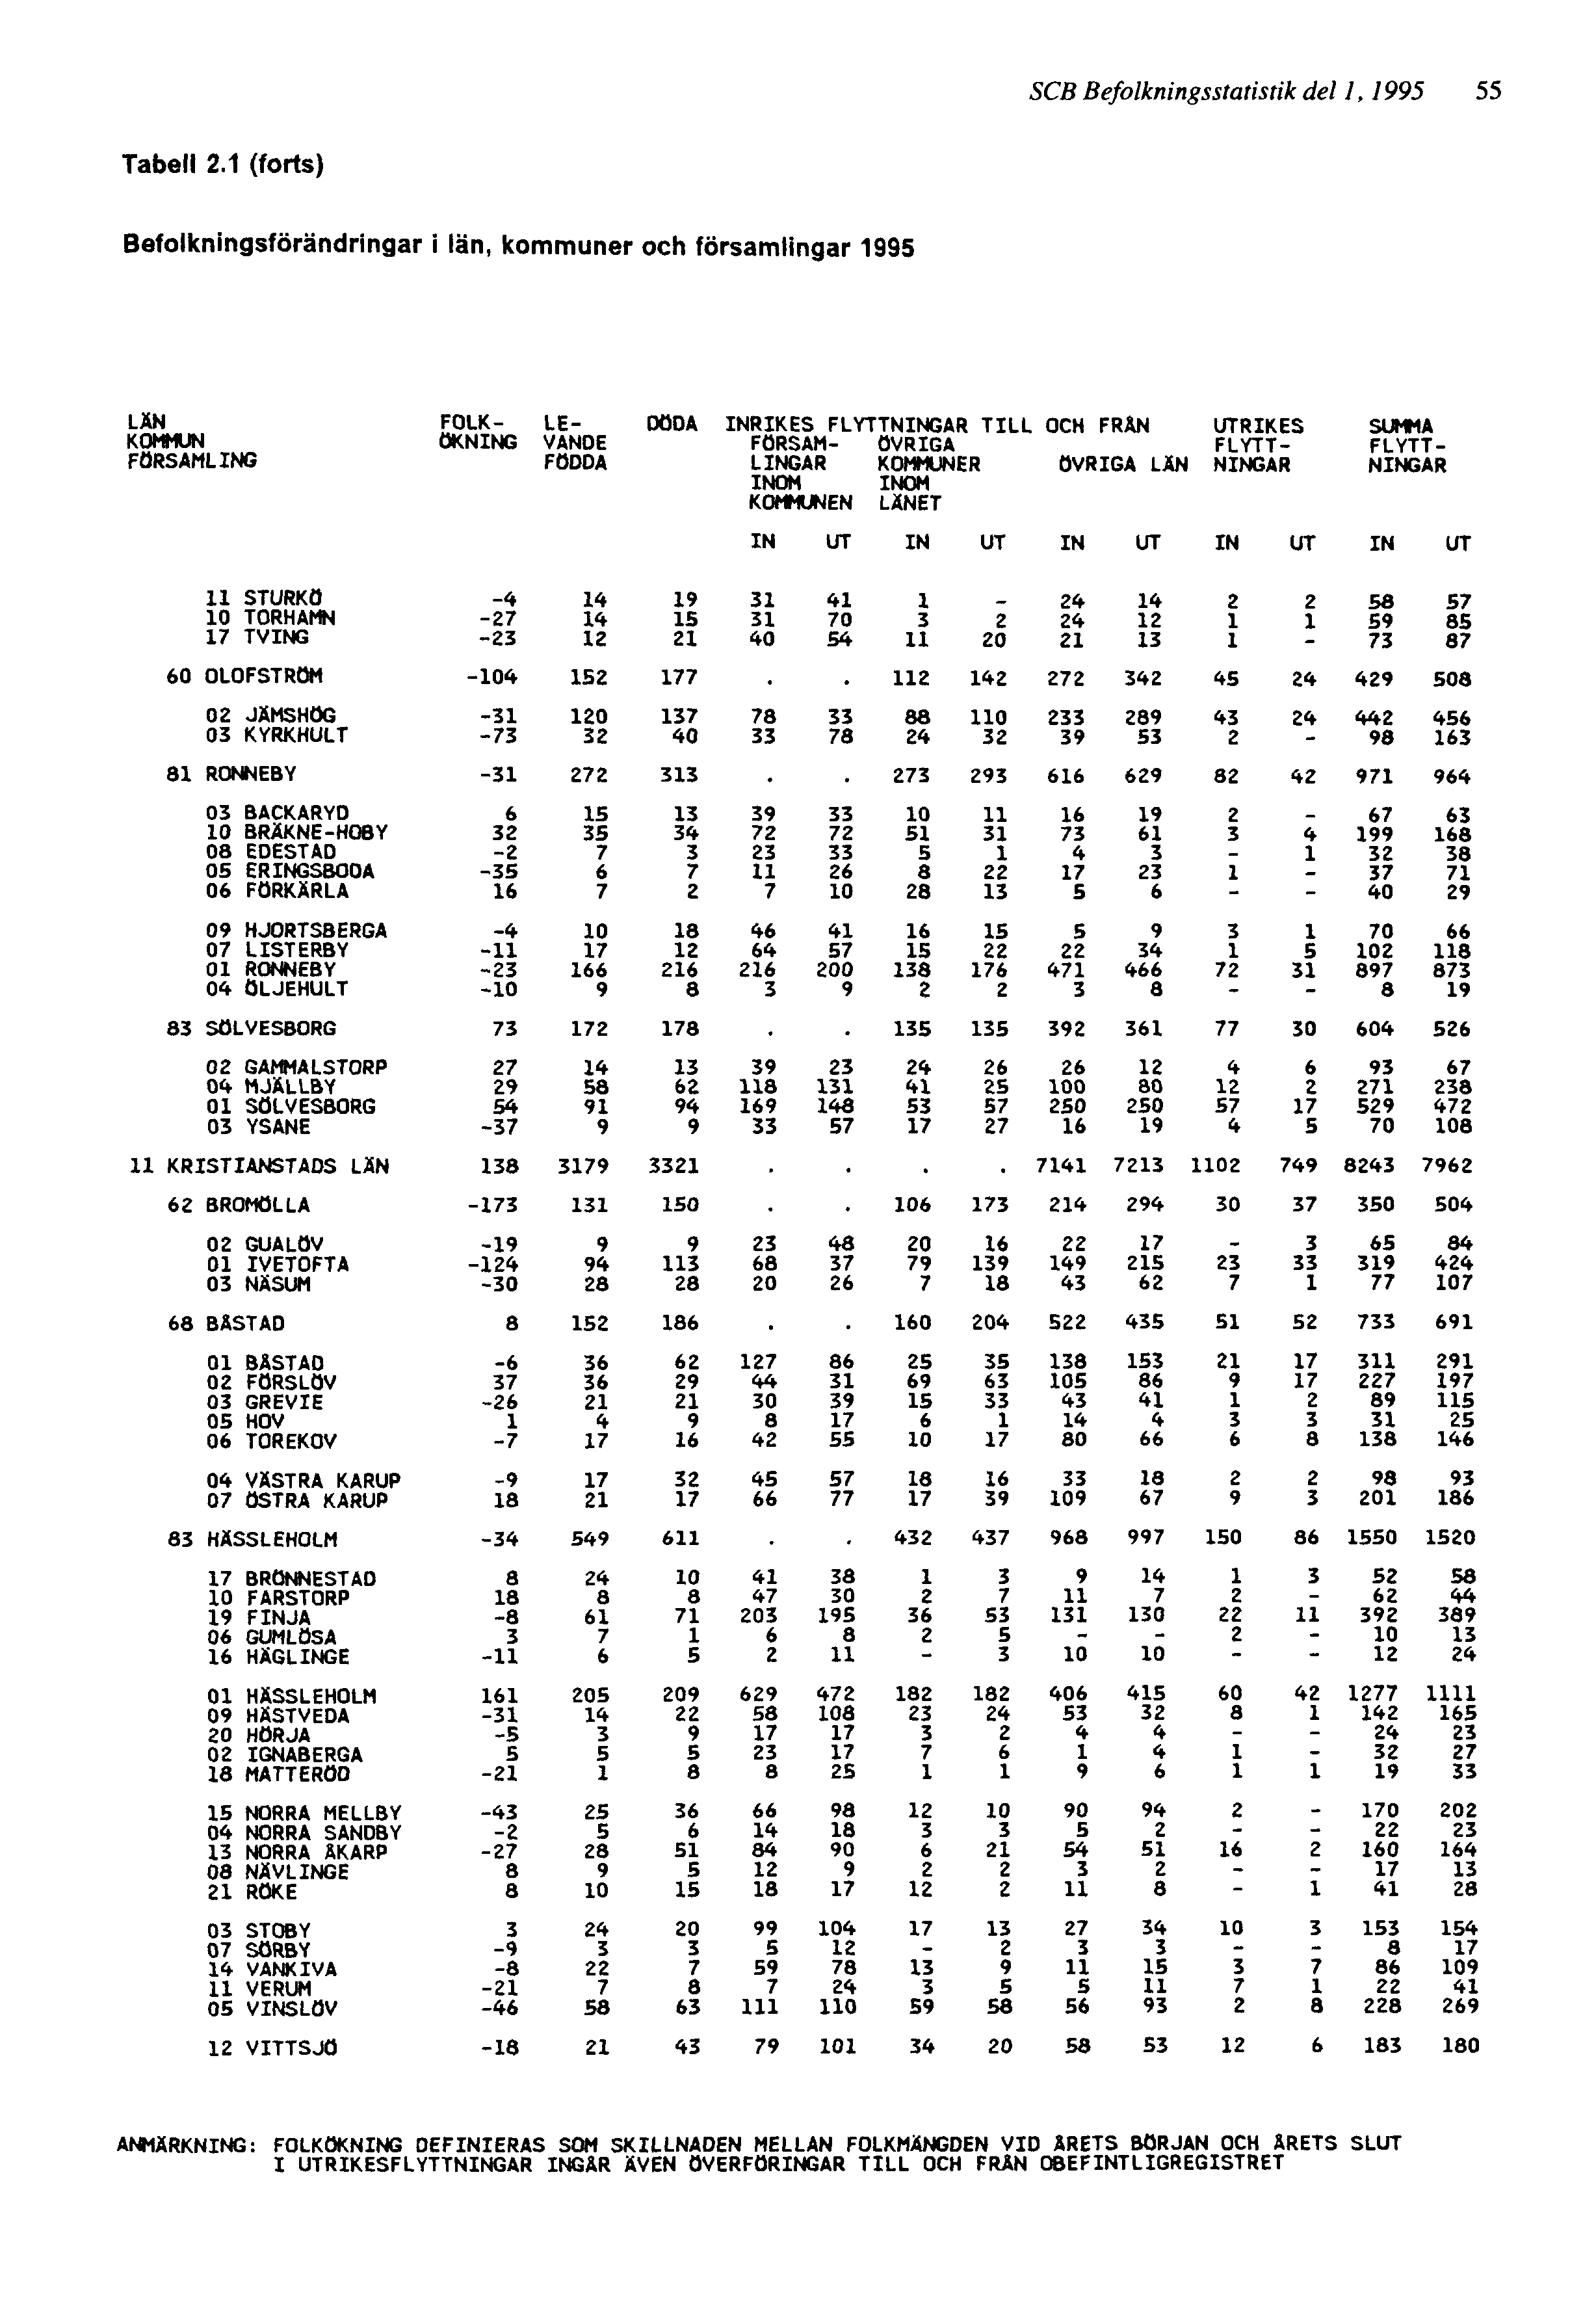 SCB Befolkningsstatistik del 1, 1995 55 ANMÄRKNING: FOLKÖKNING DEFINIERAS SOM SKILLNADEN MELLAN FOLKMÄNGDEN